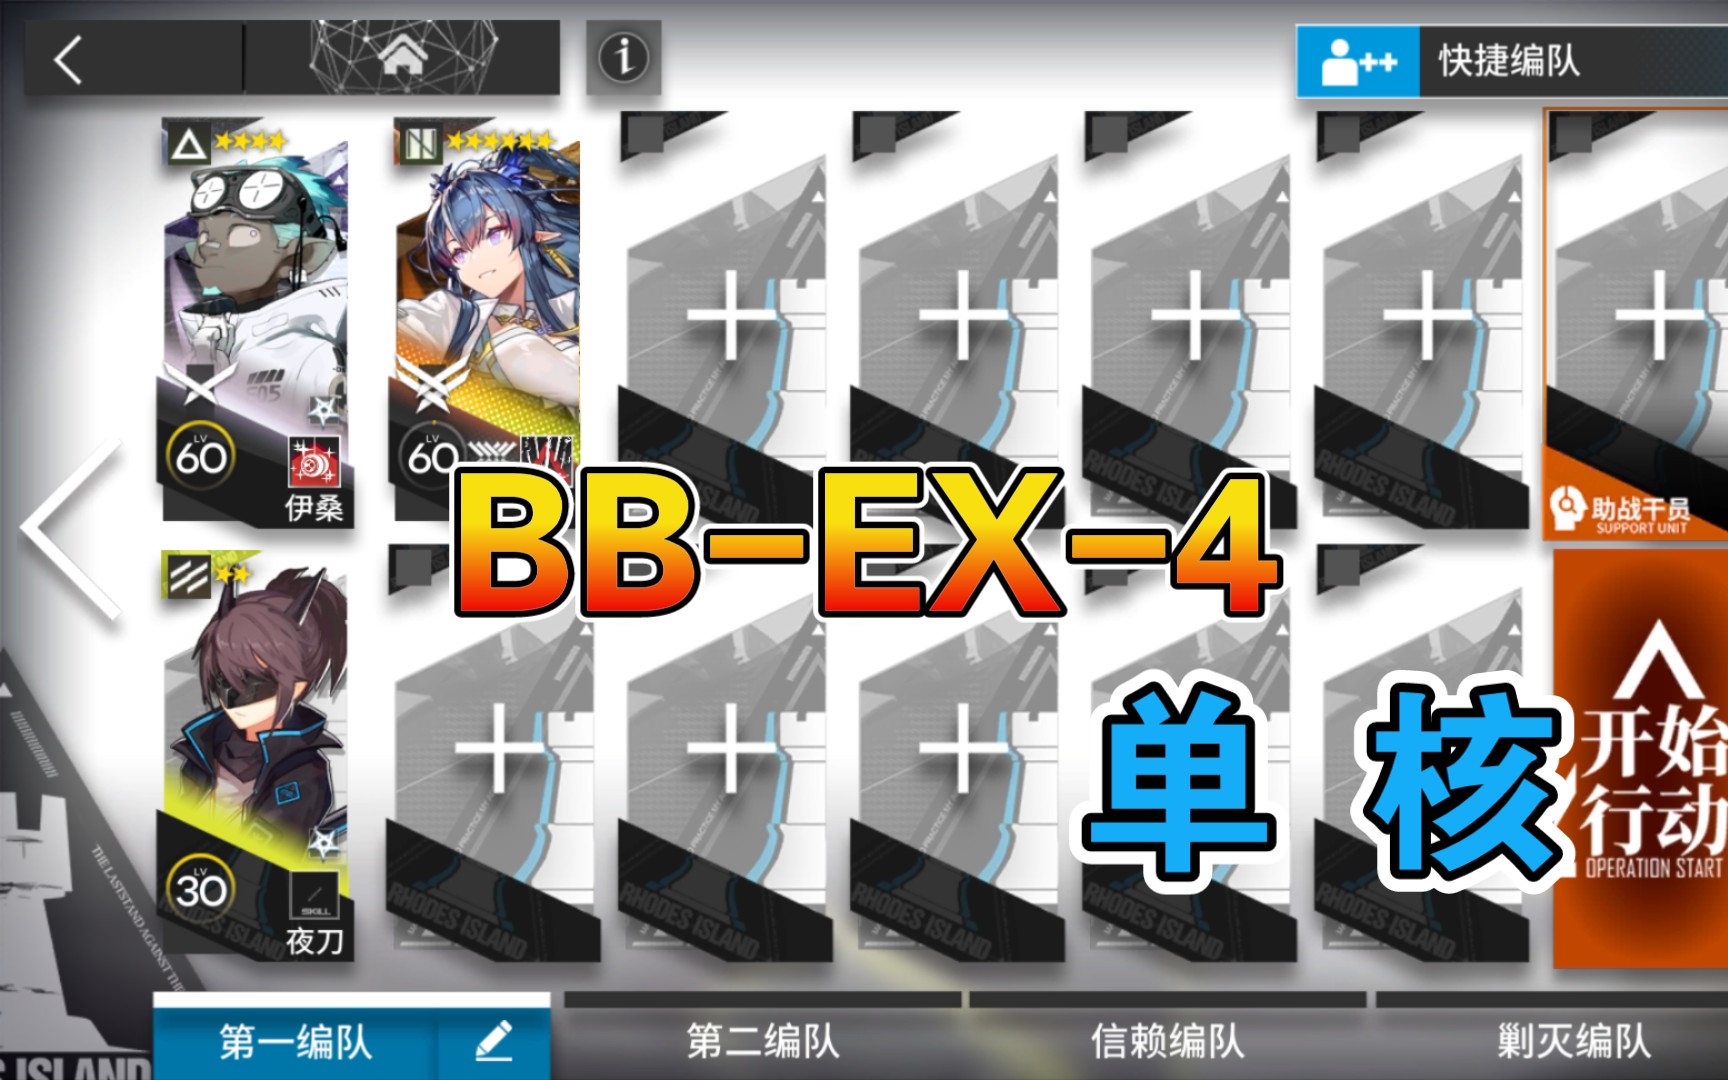 【明日方舟】 BB-EX-4 低配 单核令 巴别塔